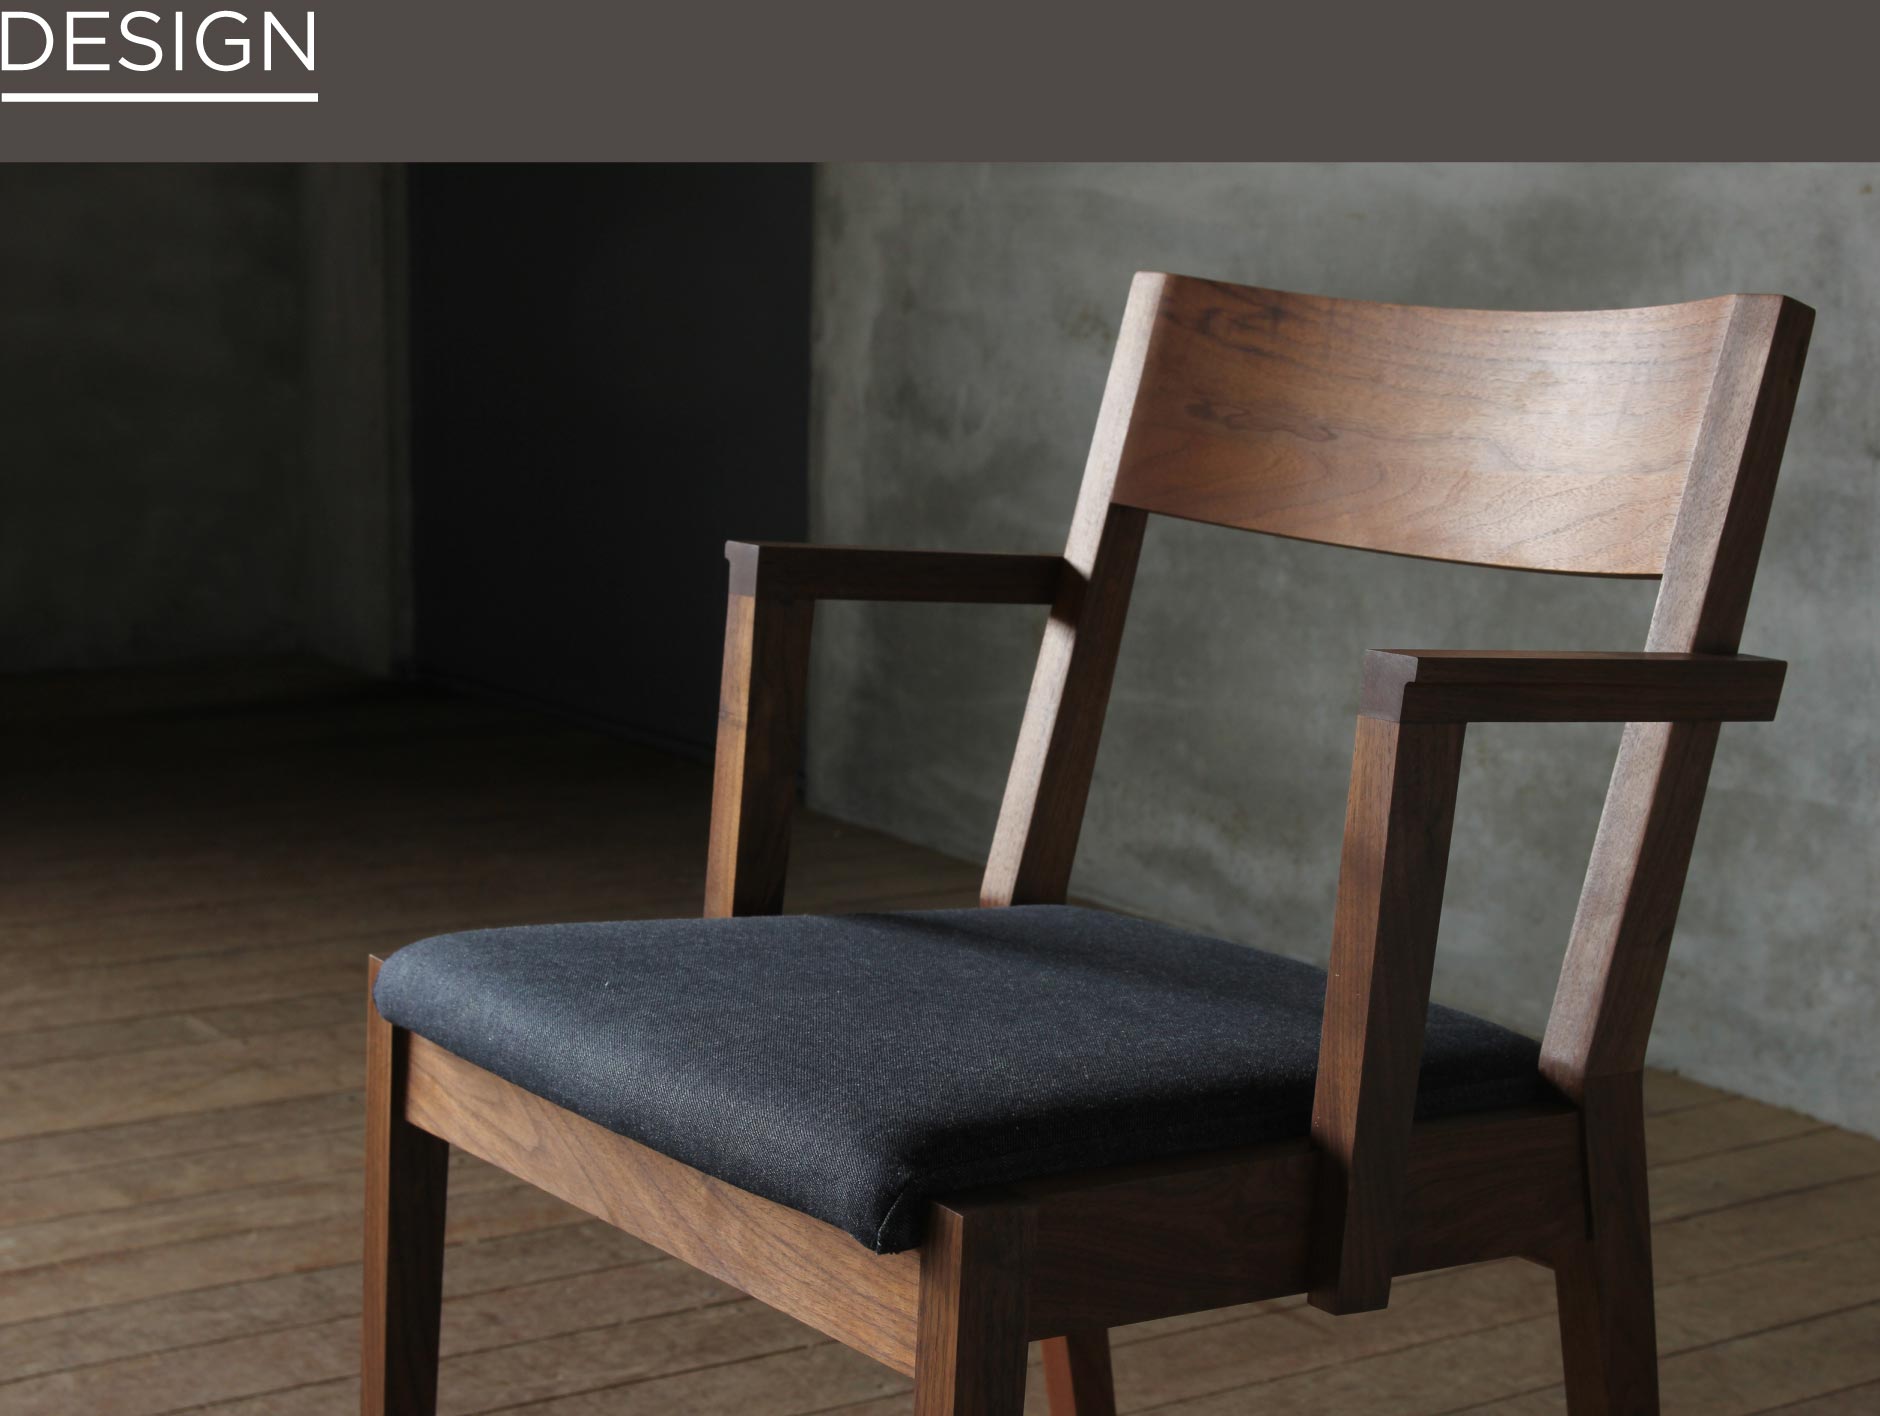 立ち座りの動作がしやすく、機能面もデザイン面も突き詰める事でシンプルな形になりました。SOLID大阪の家具で人気のショートアームチェア。